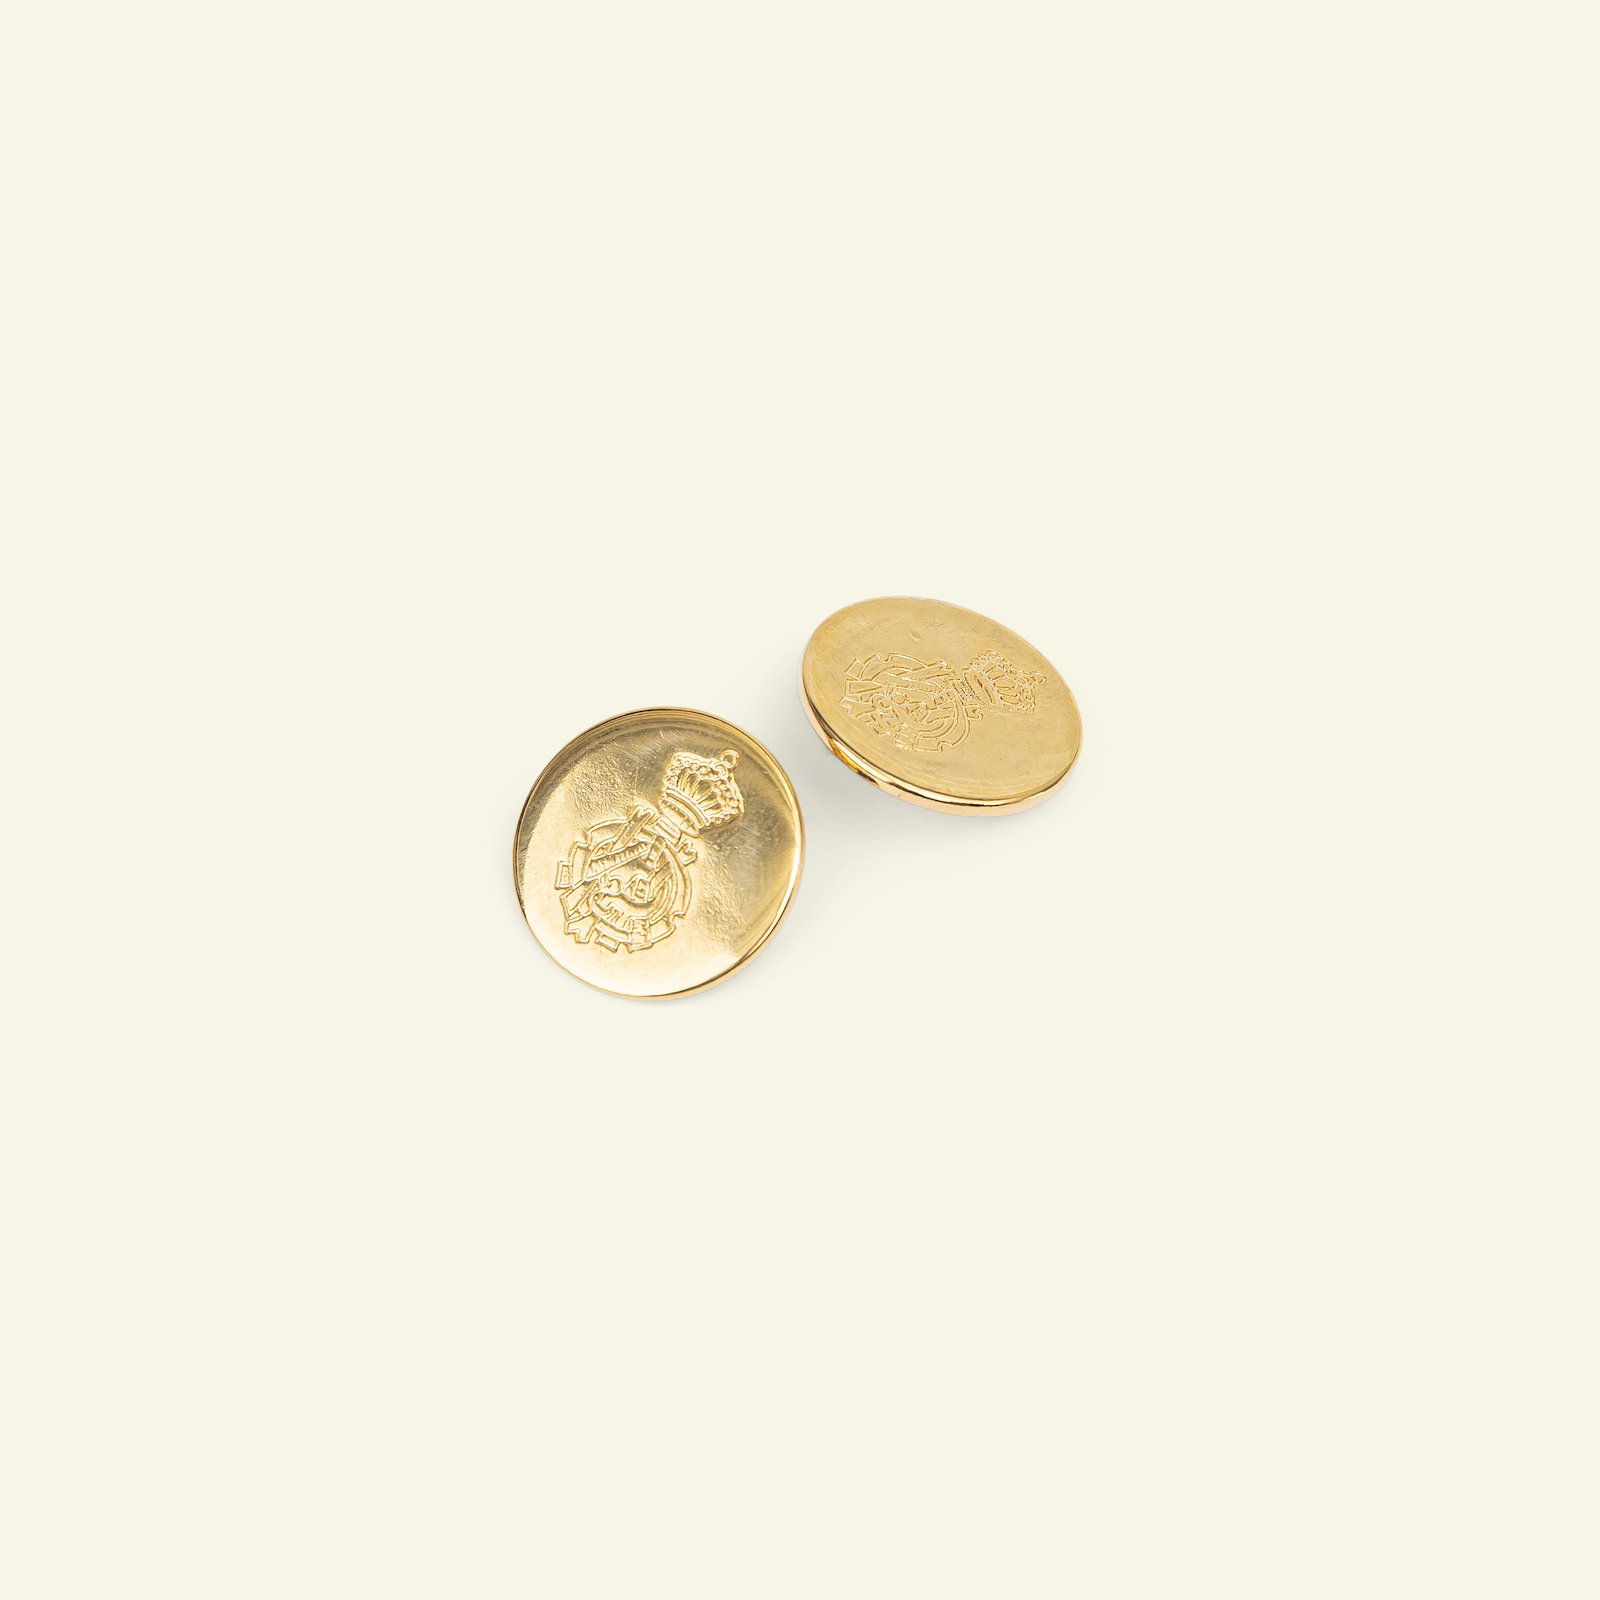 Shank button metal 20mm gold colour 2pcs 33594_pack